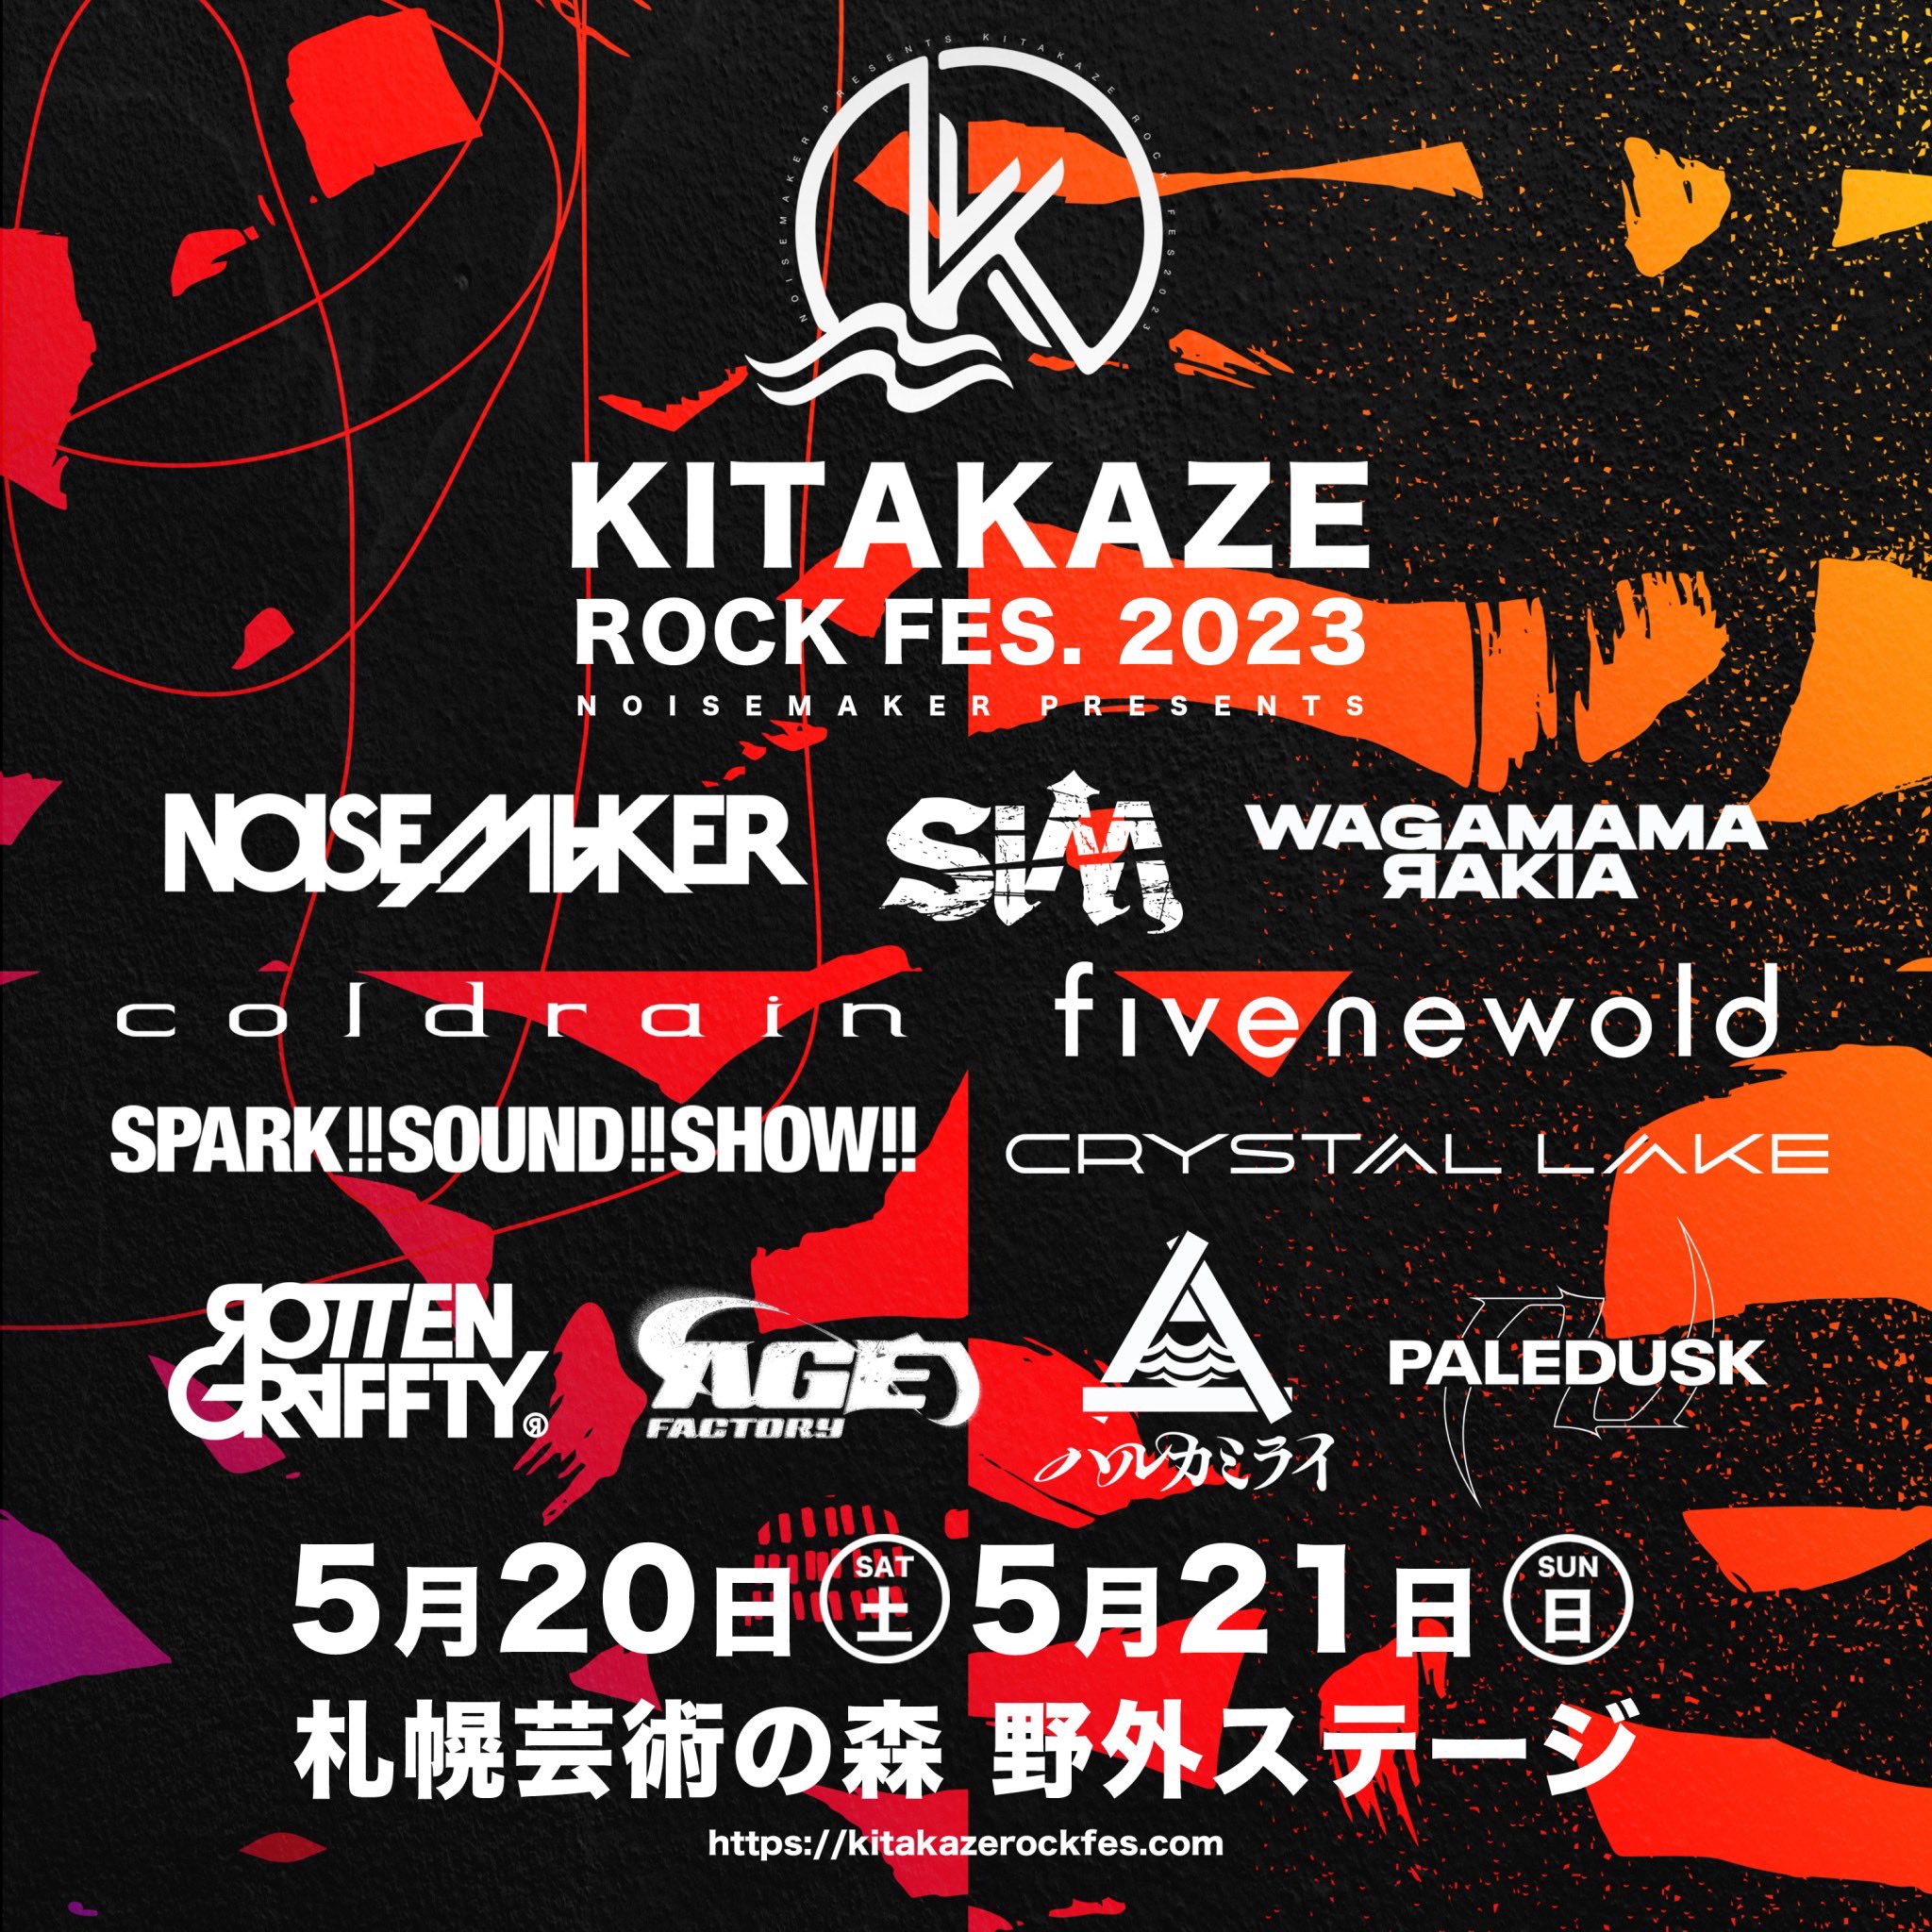  NOISEMAKER presents KITAKAZE ROCK FES.2023